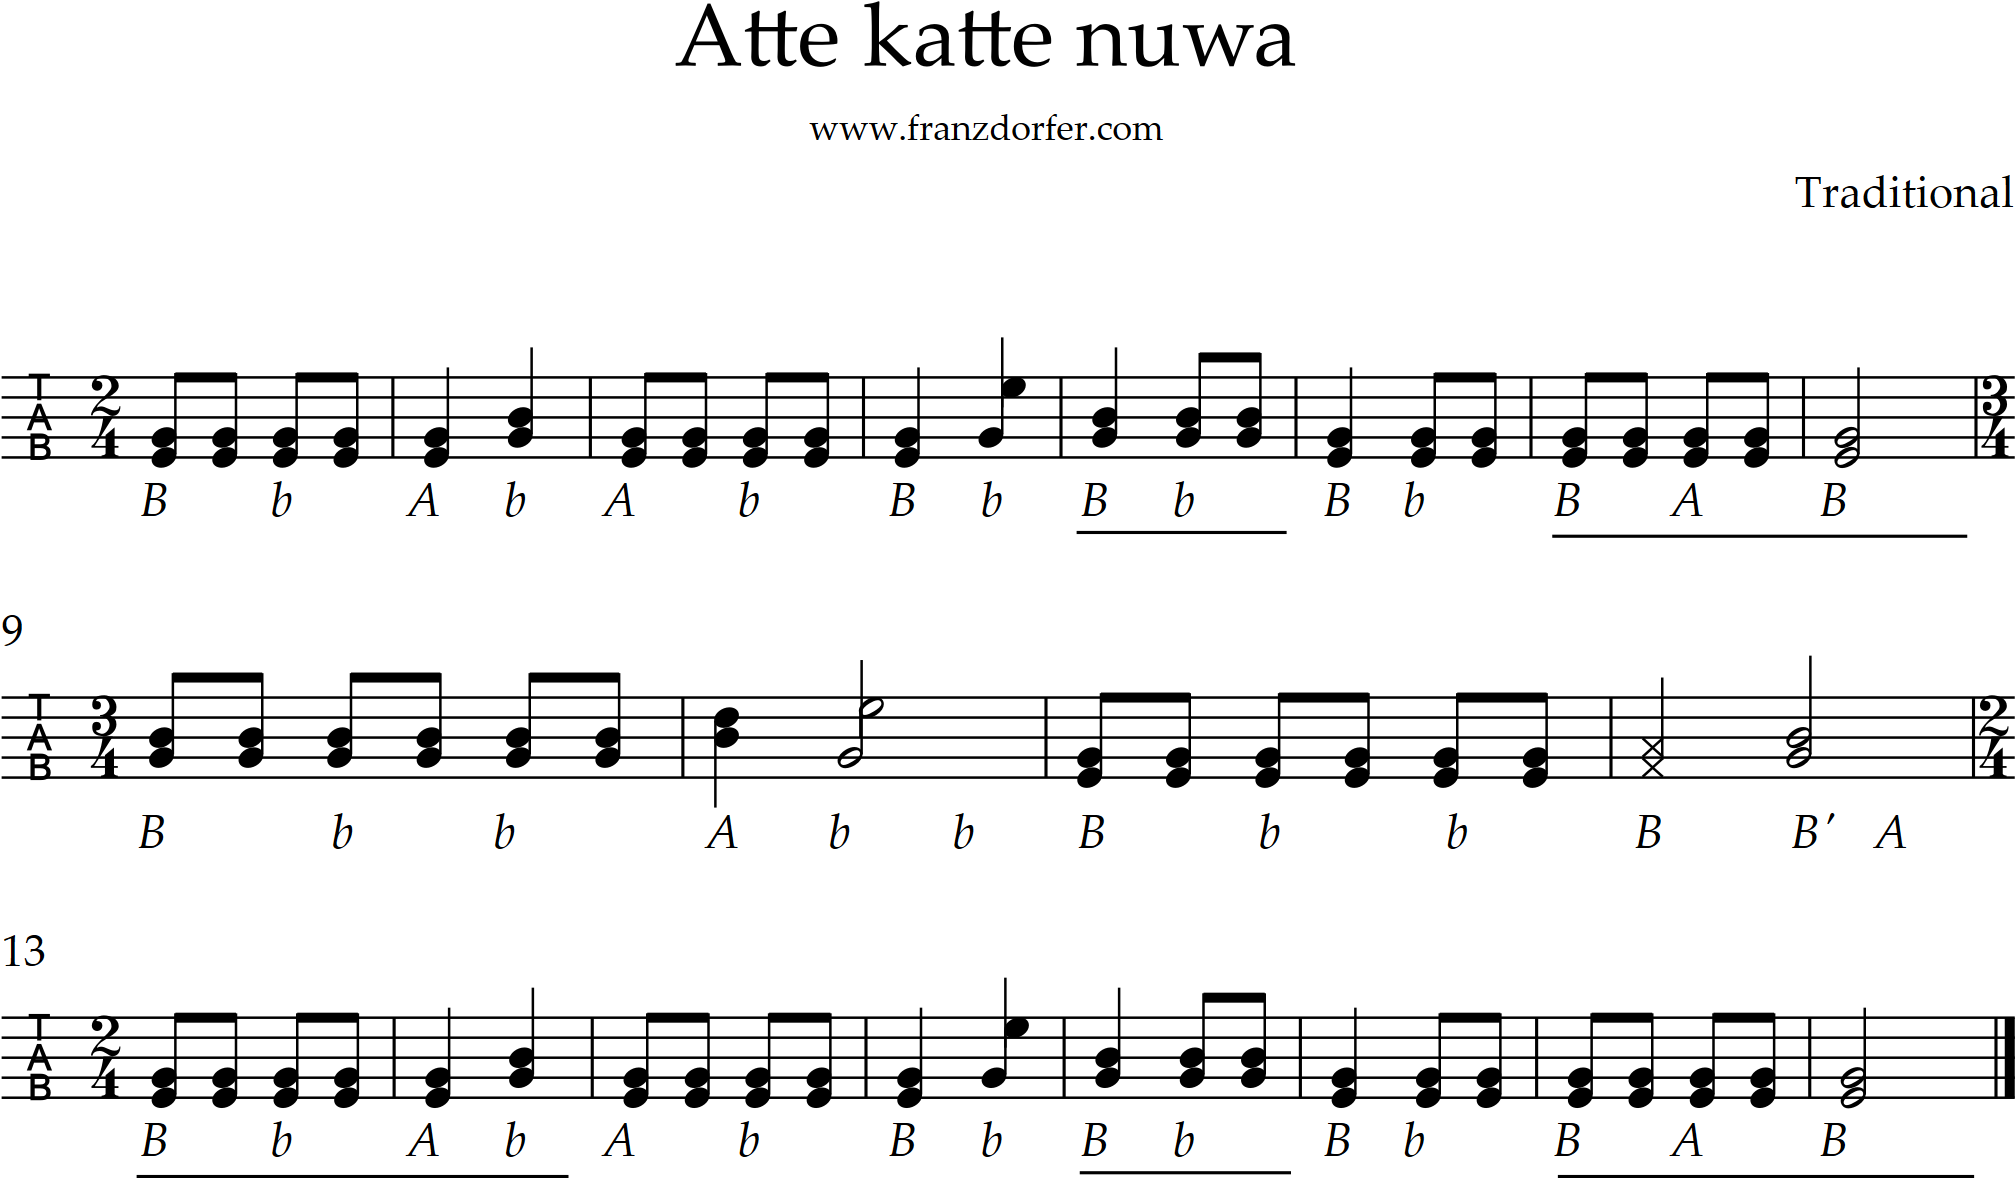 noten für steirische harmonika, atte katte nuwa